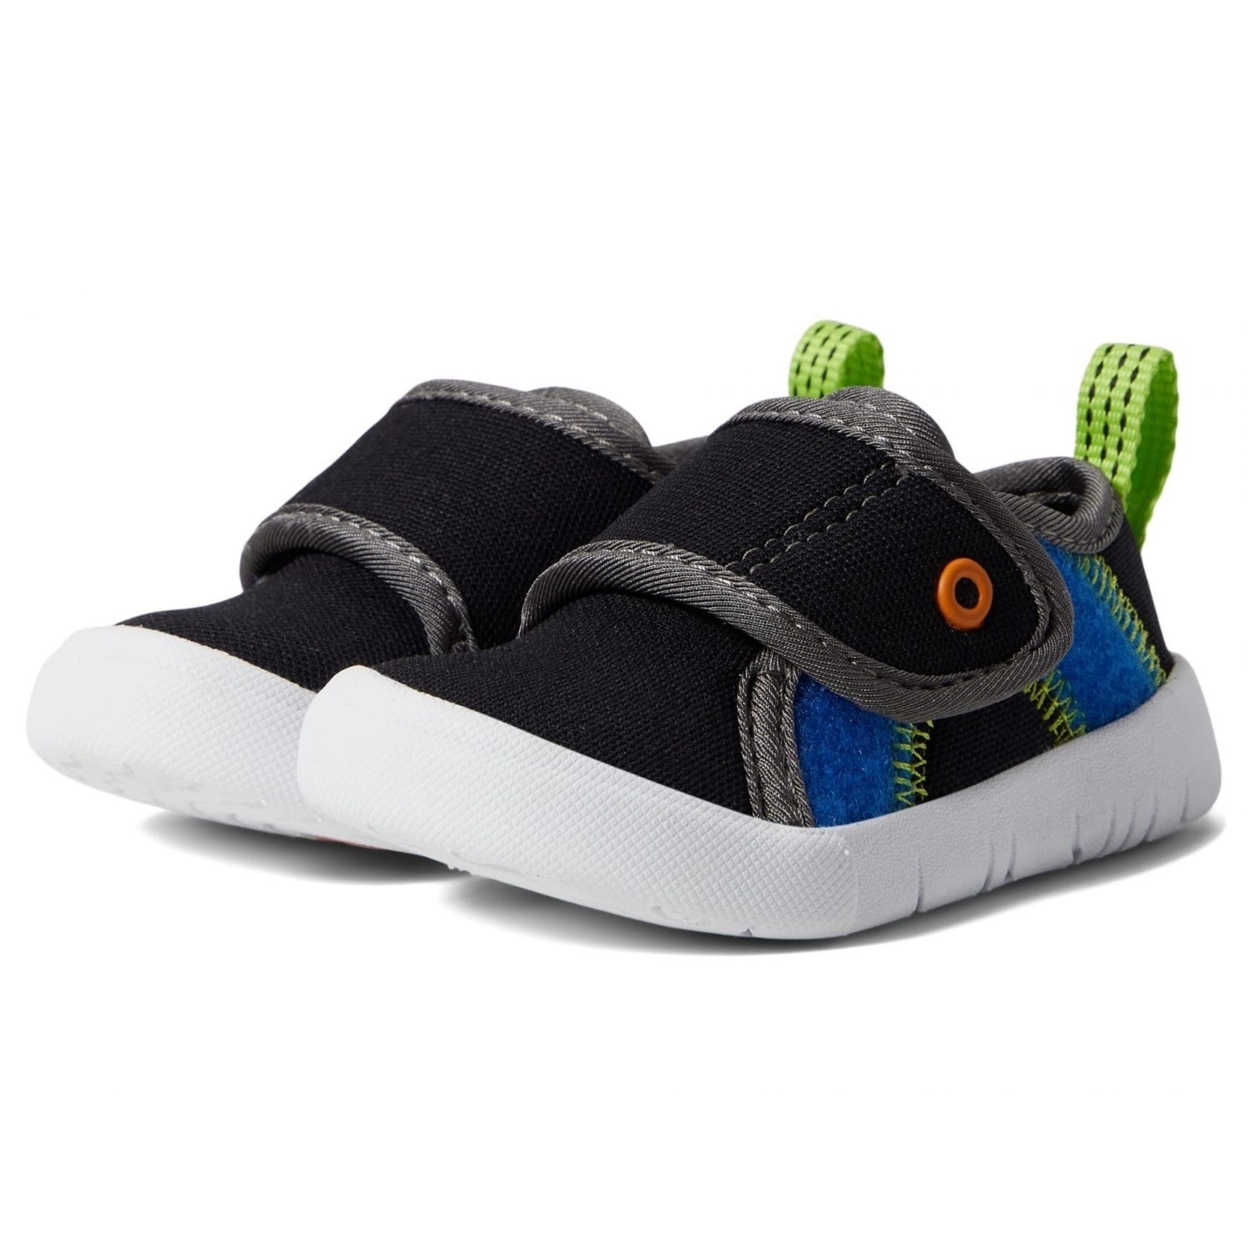 BOGS Unisex Baby Kicker Hook And Loop Shoe Sneaker Black Multi - 72811I-009 1 BLACK MULTI - BLACK MULTI, 10 Little Kid